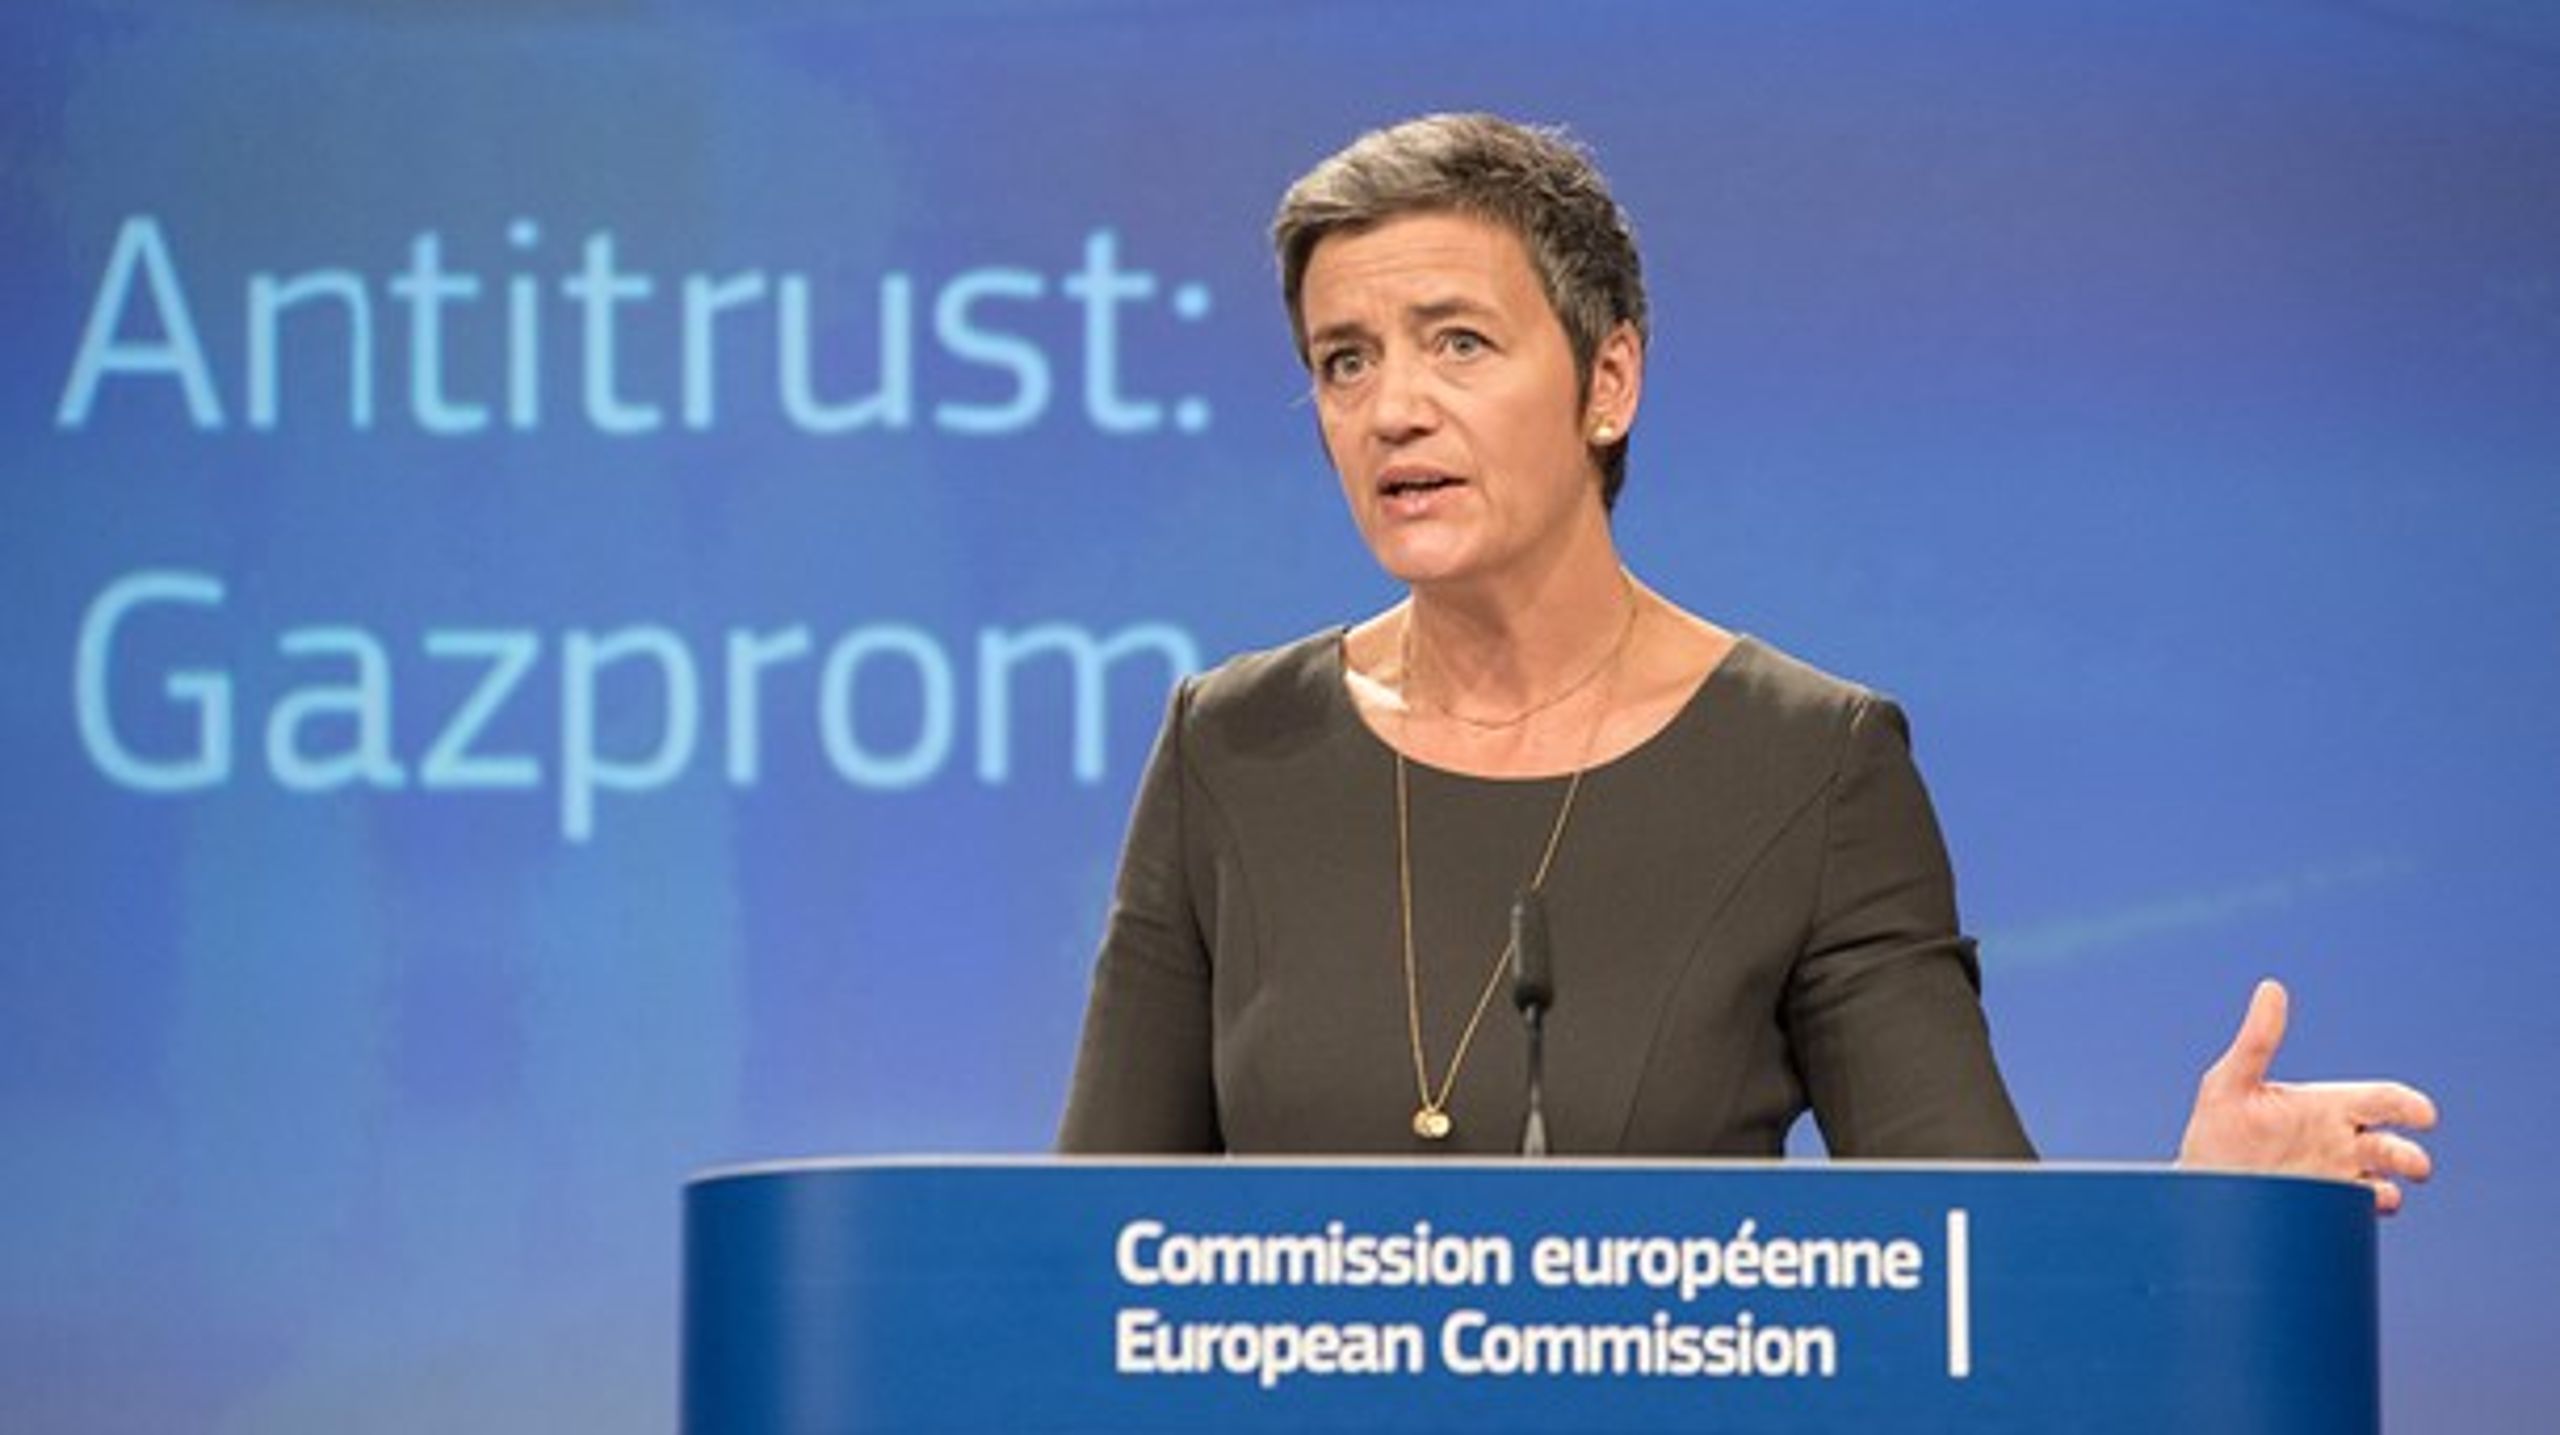 I april 2015 annoncerede Margrethe Vestager undersøgelsen af Gazprom. Torsdag præsenterede hun de foreløbige konsekvenser.